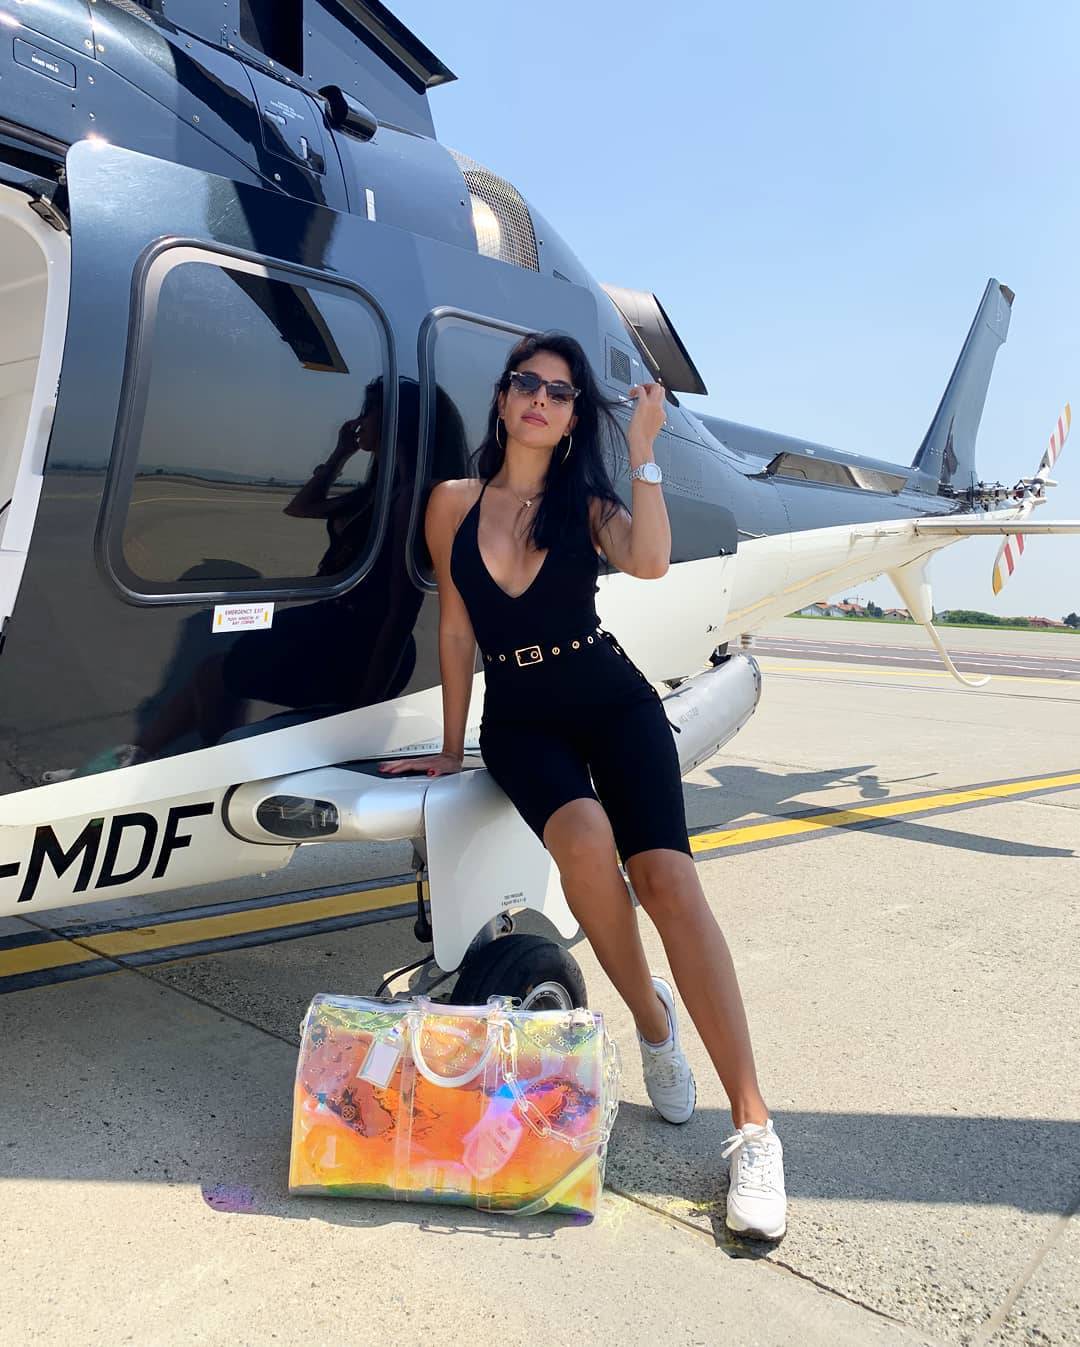 Ronaldova djevojka voli luksuz: Hvali se torbom od 16.000 kn